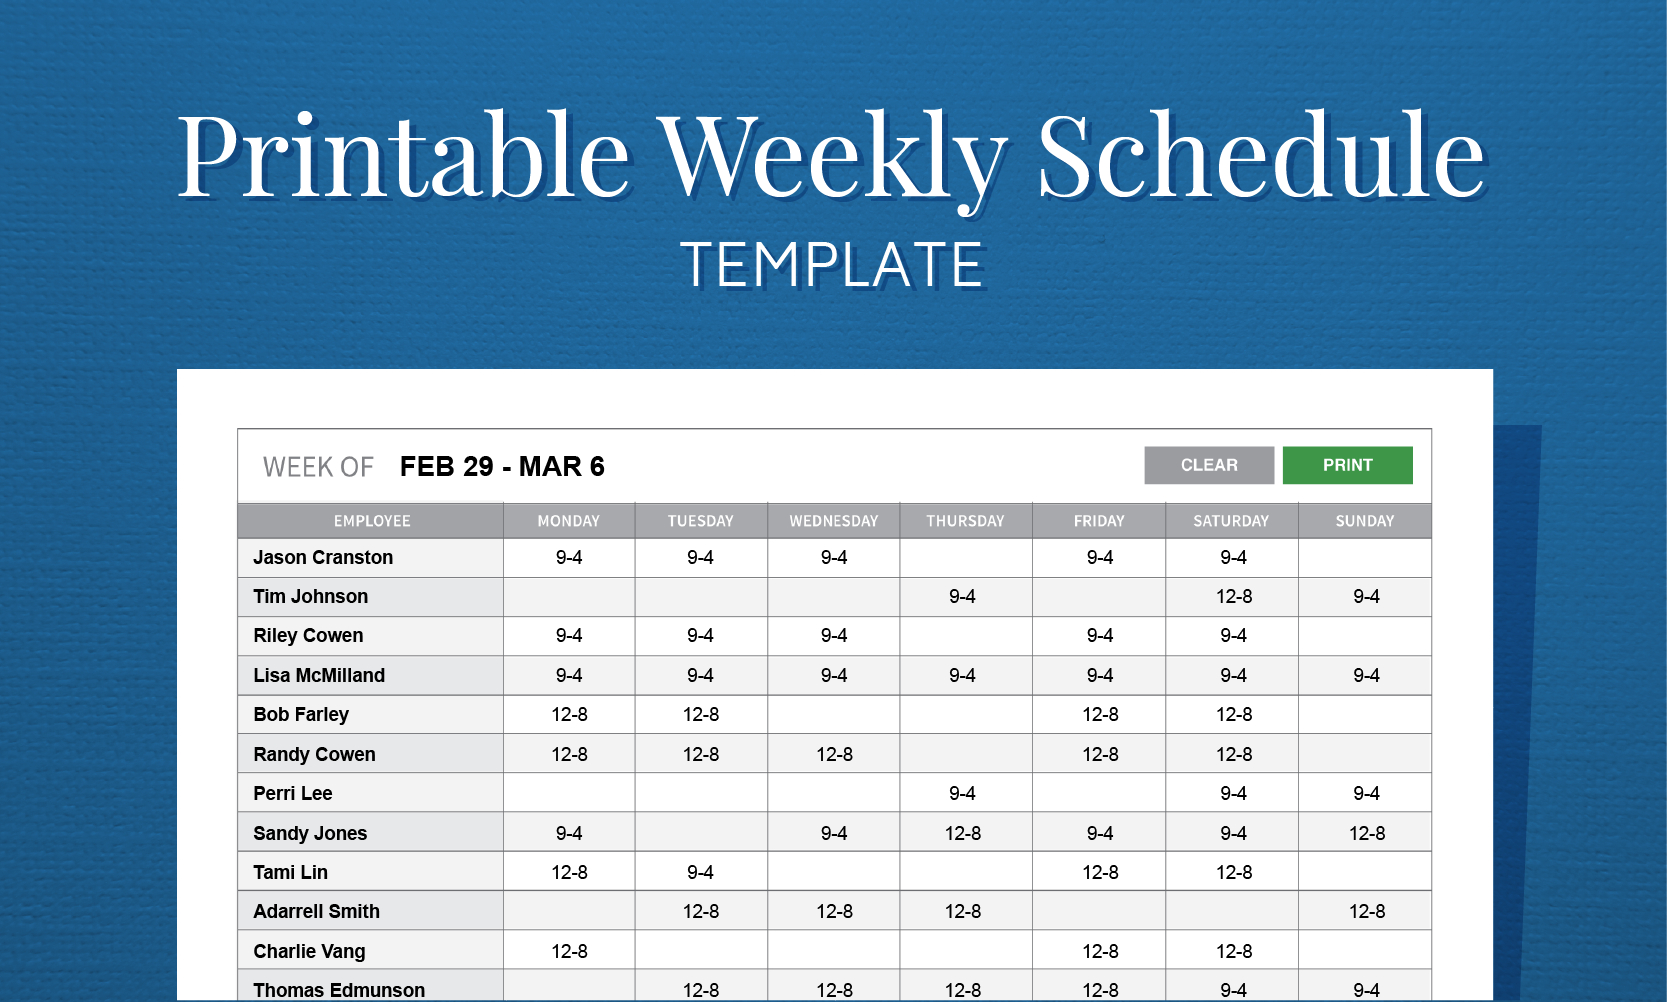 Free Printable Weekly Work Schedule Template For Employee Scheduling with Employee Schedule Templates